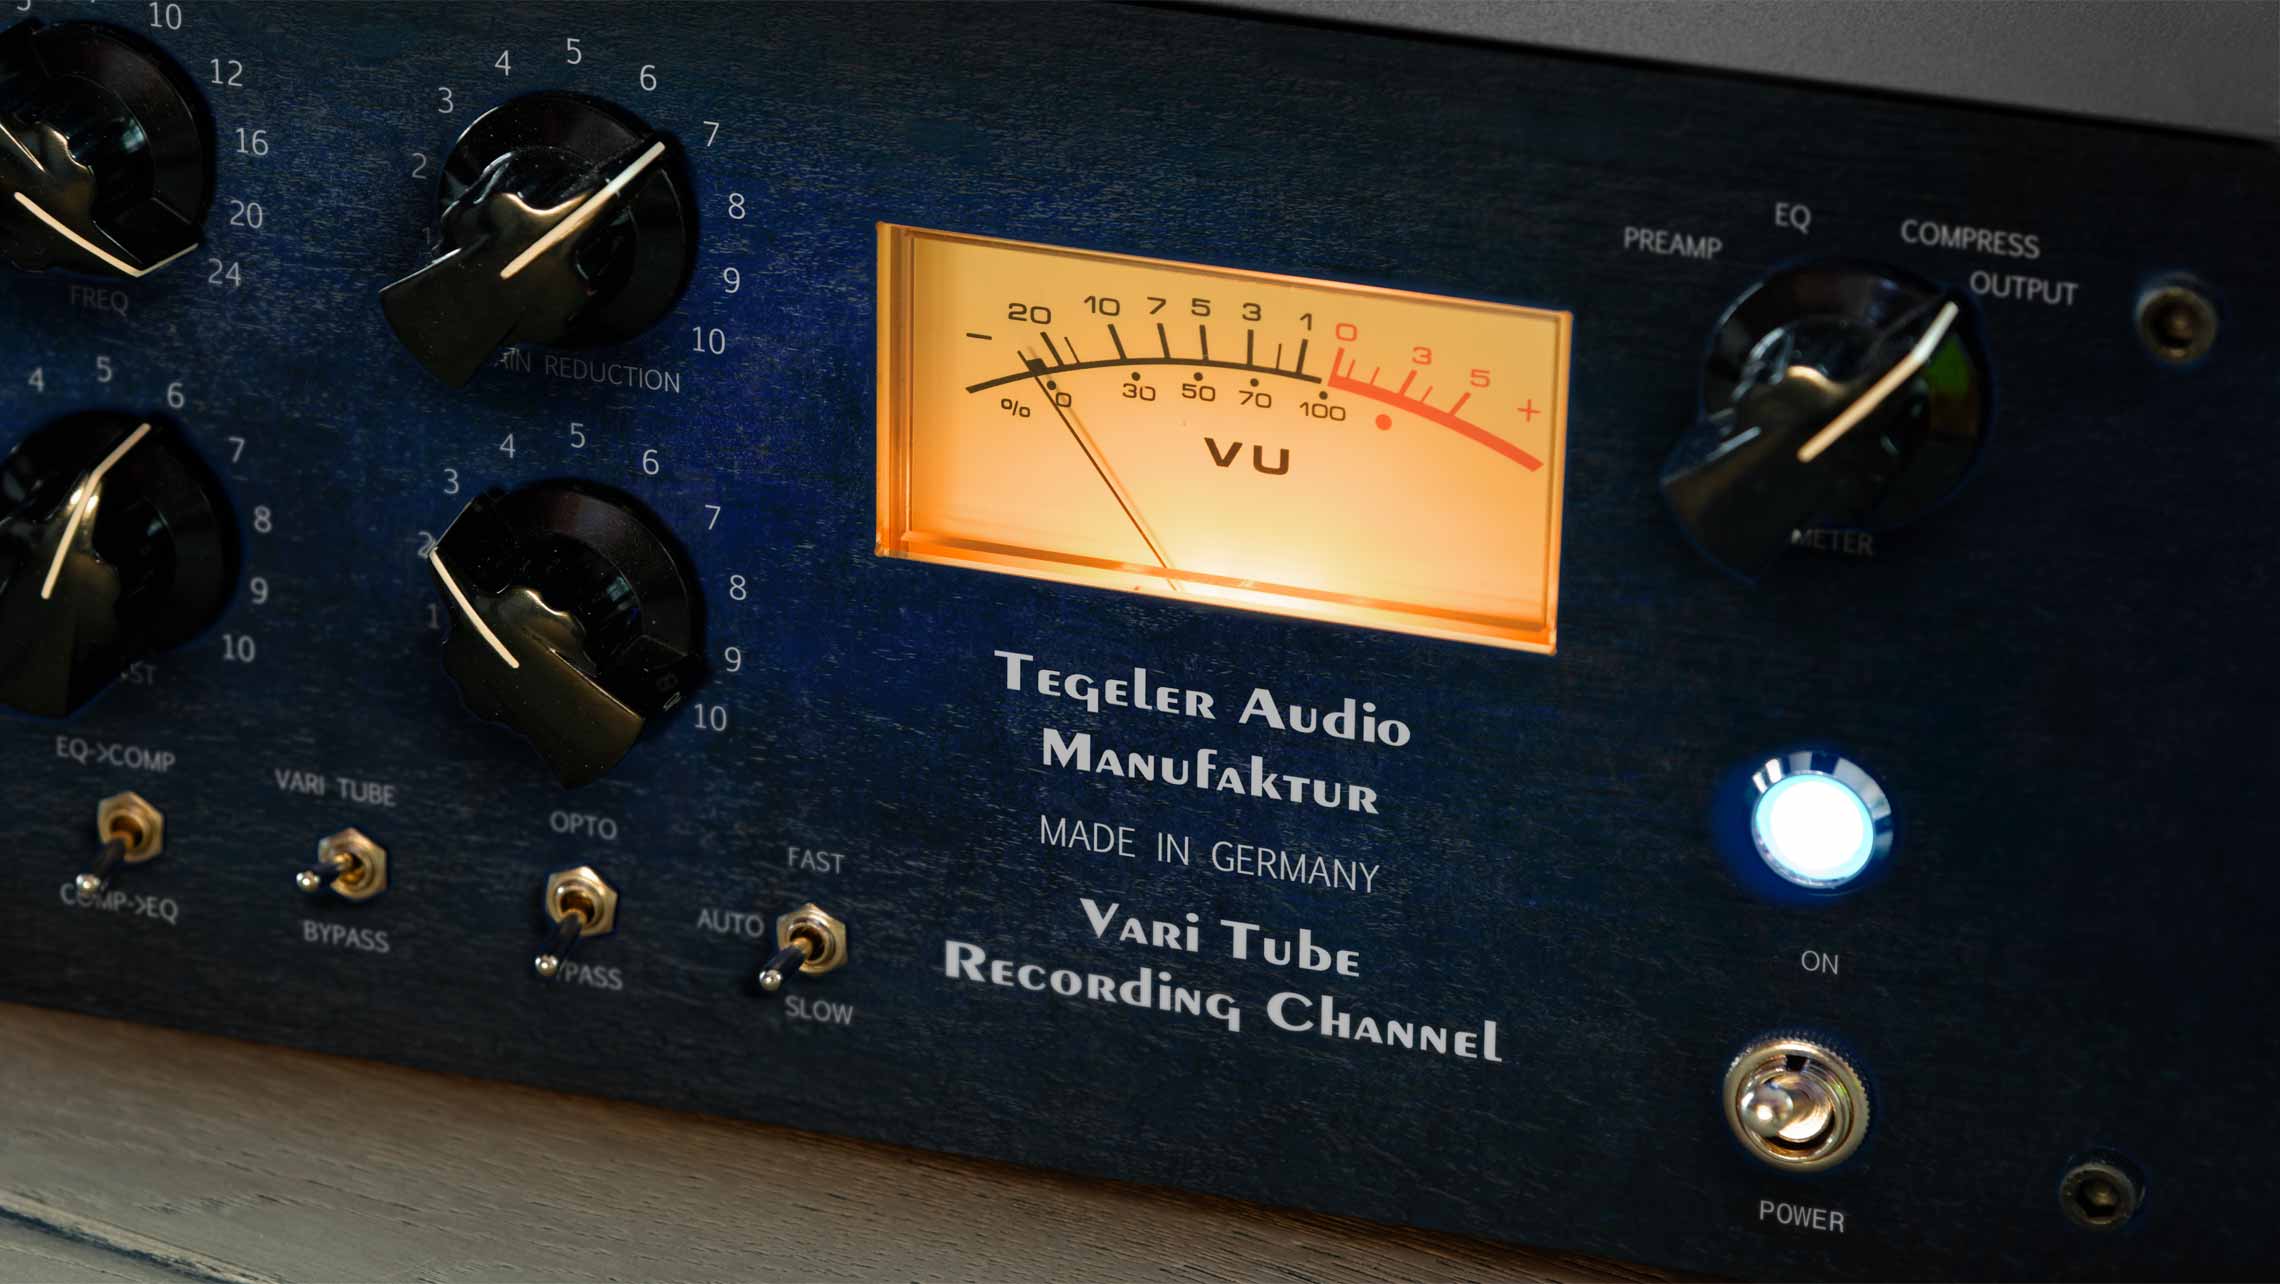 Tegeler Audio Manufaktur Vtrc Recording Channel - Voorversterker - Variation 1